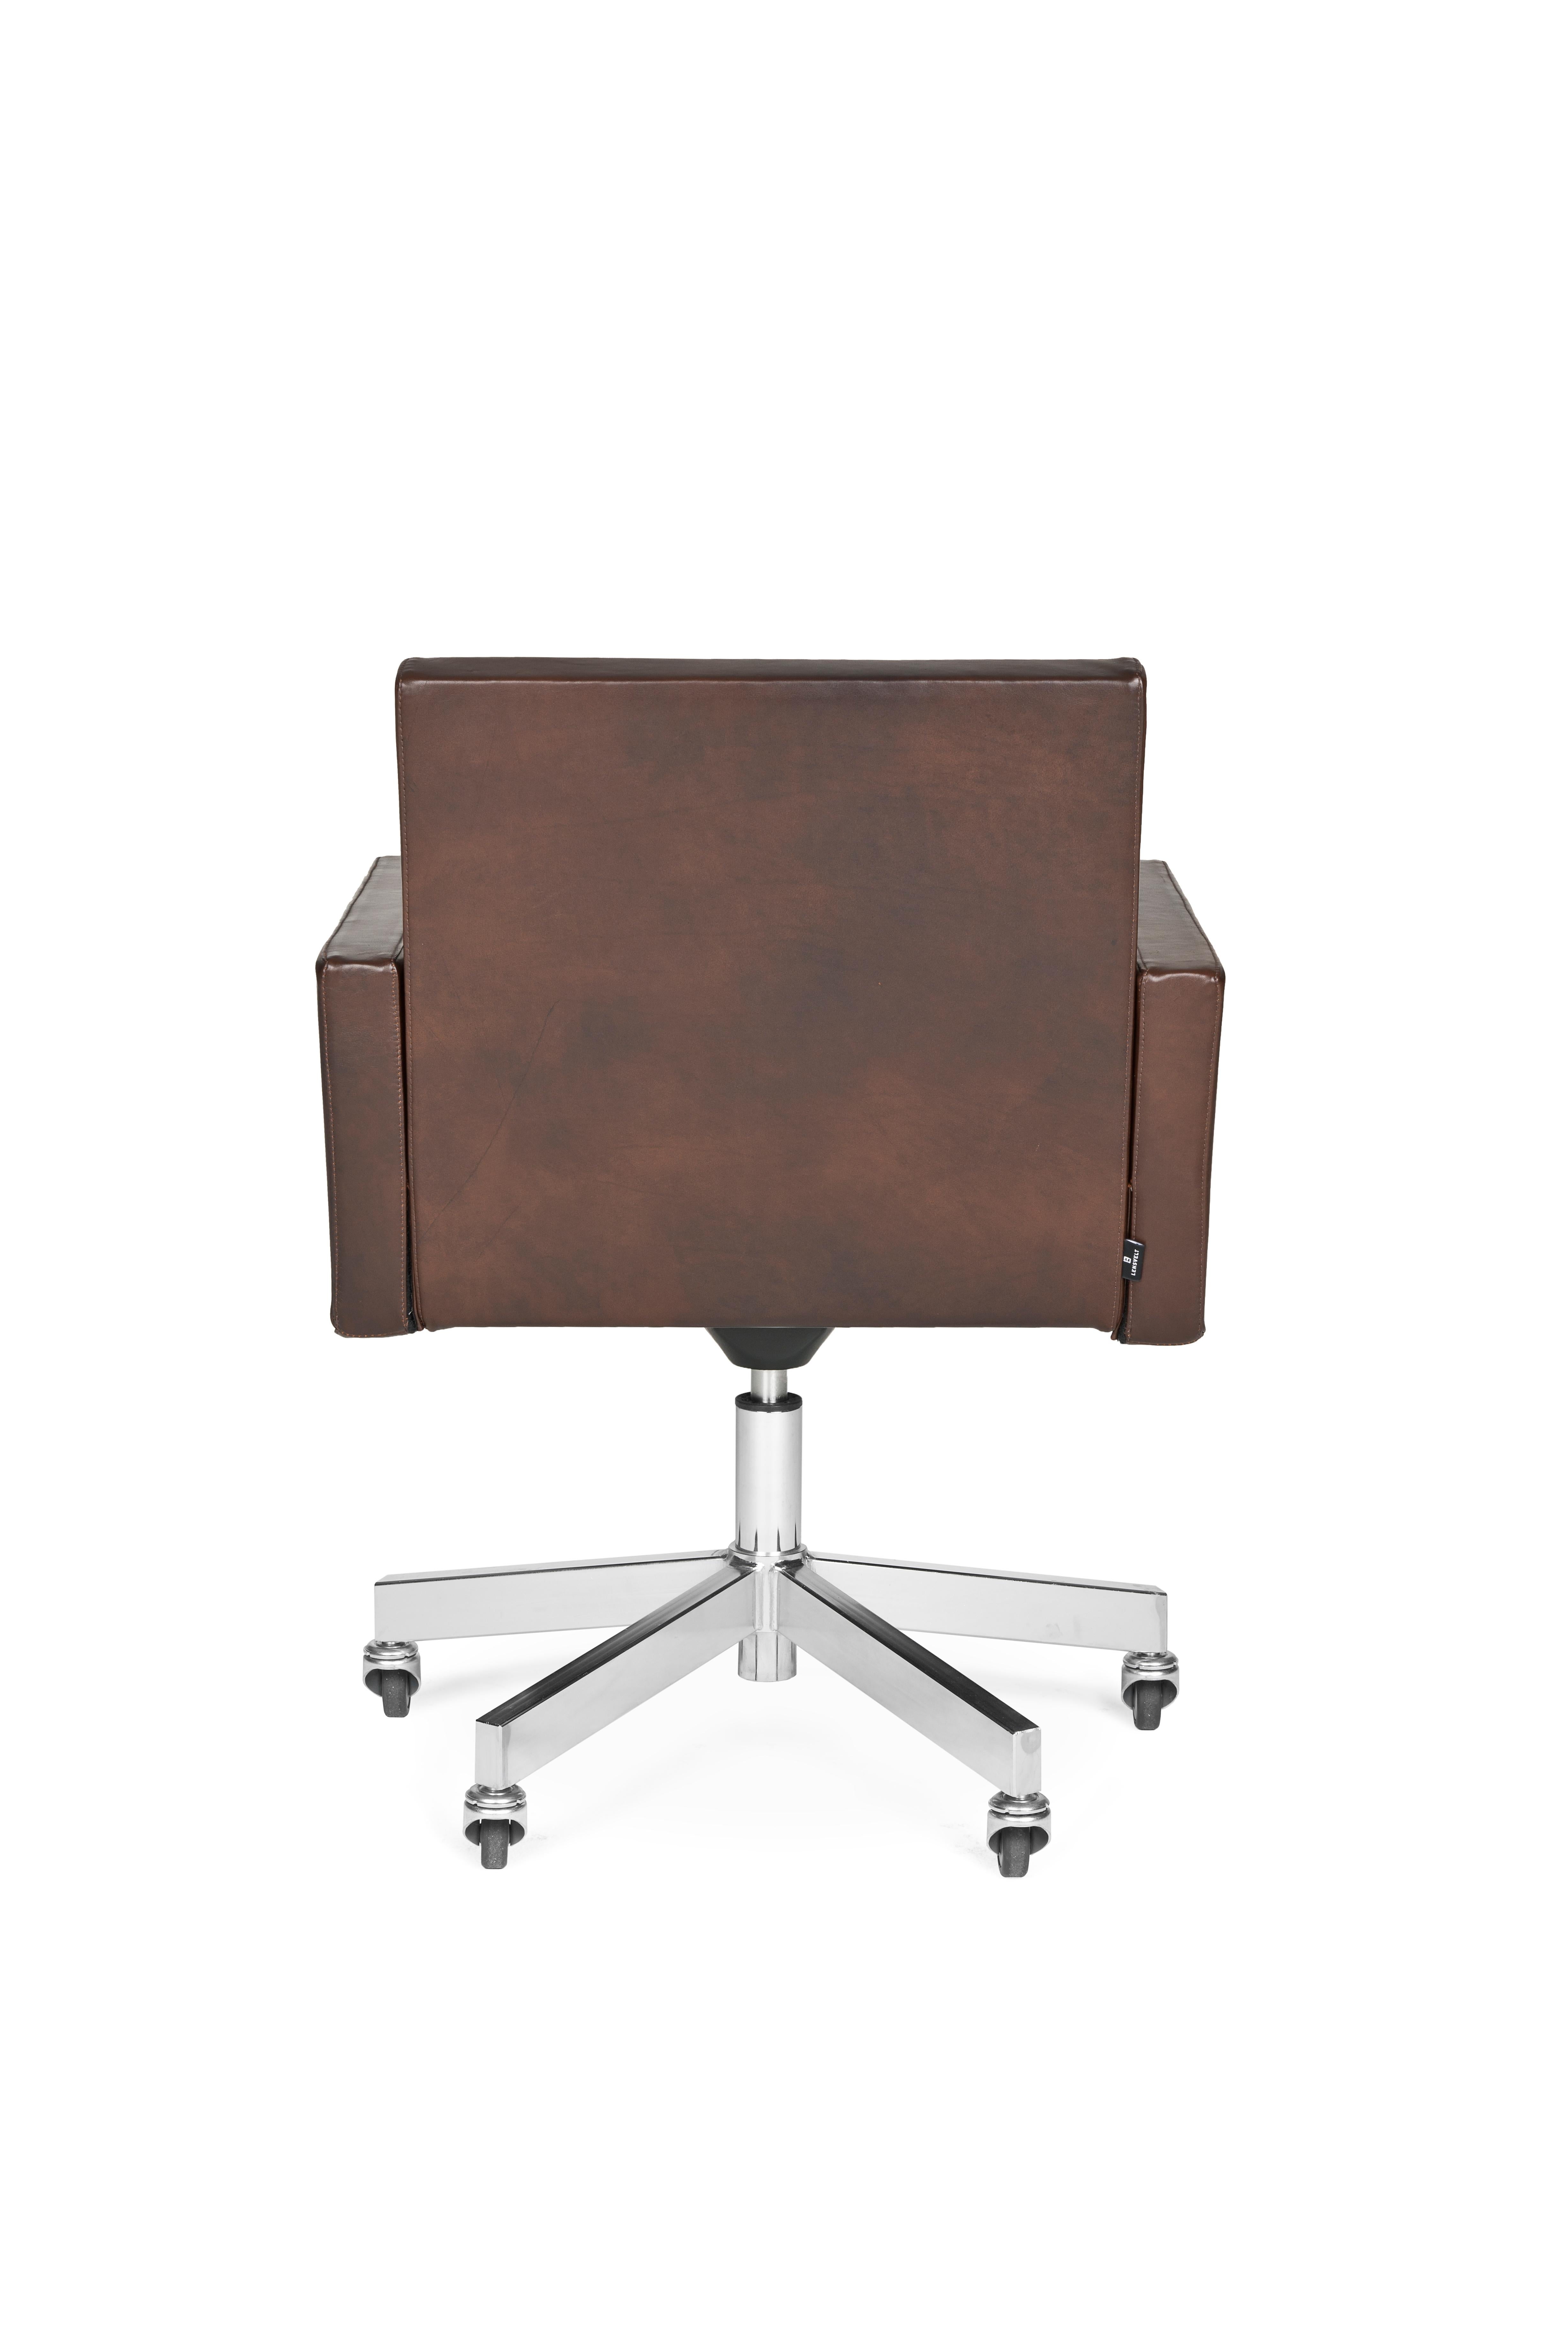 Modern Lensvelt AVL Office Chair For Sale